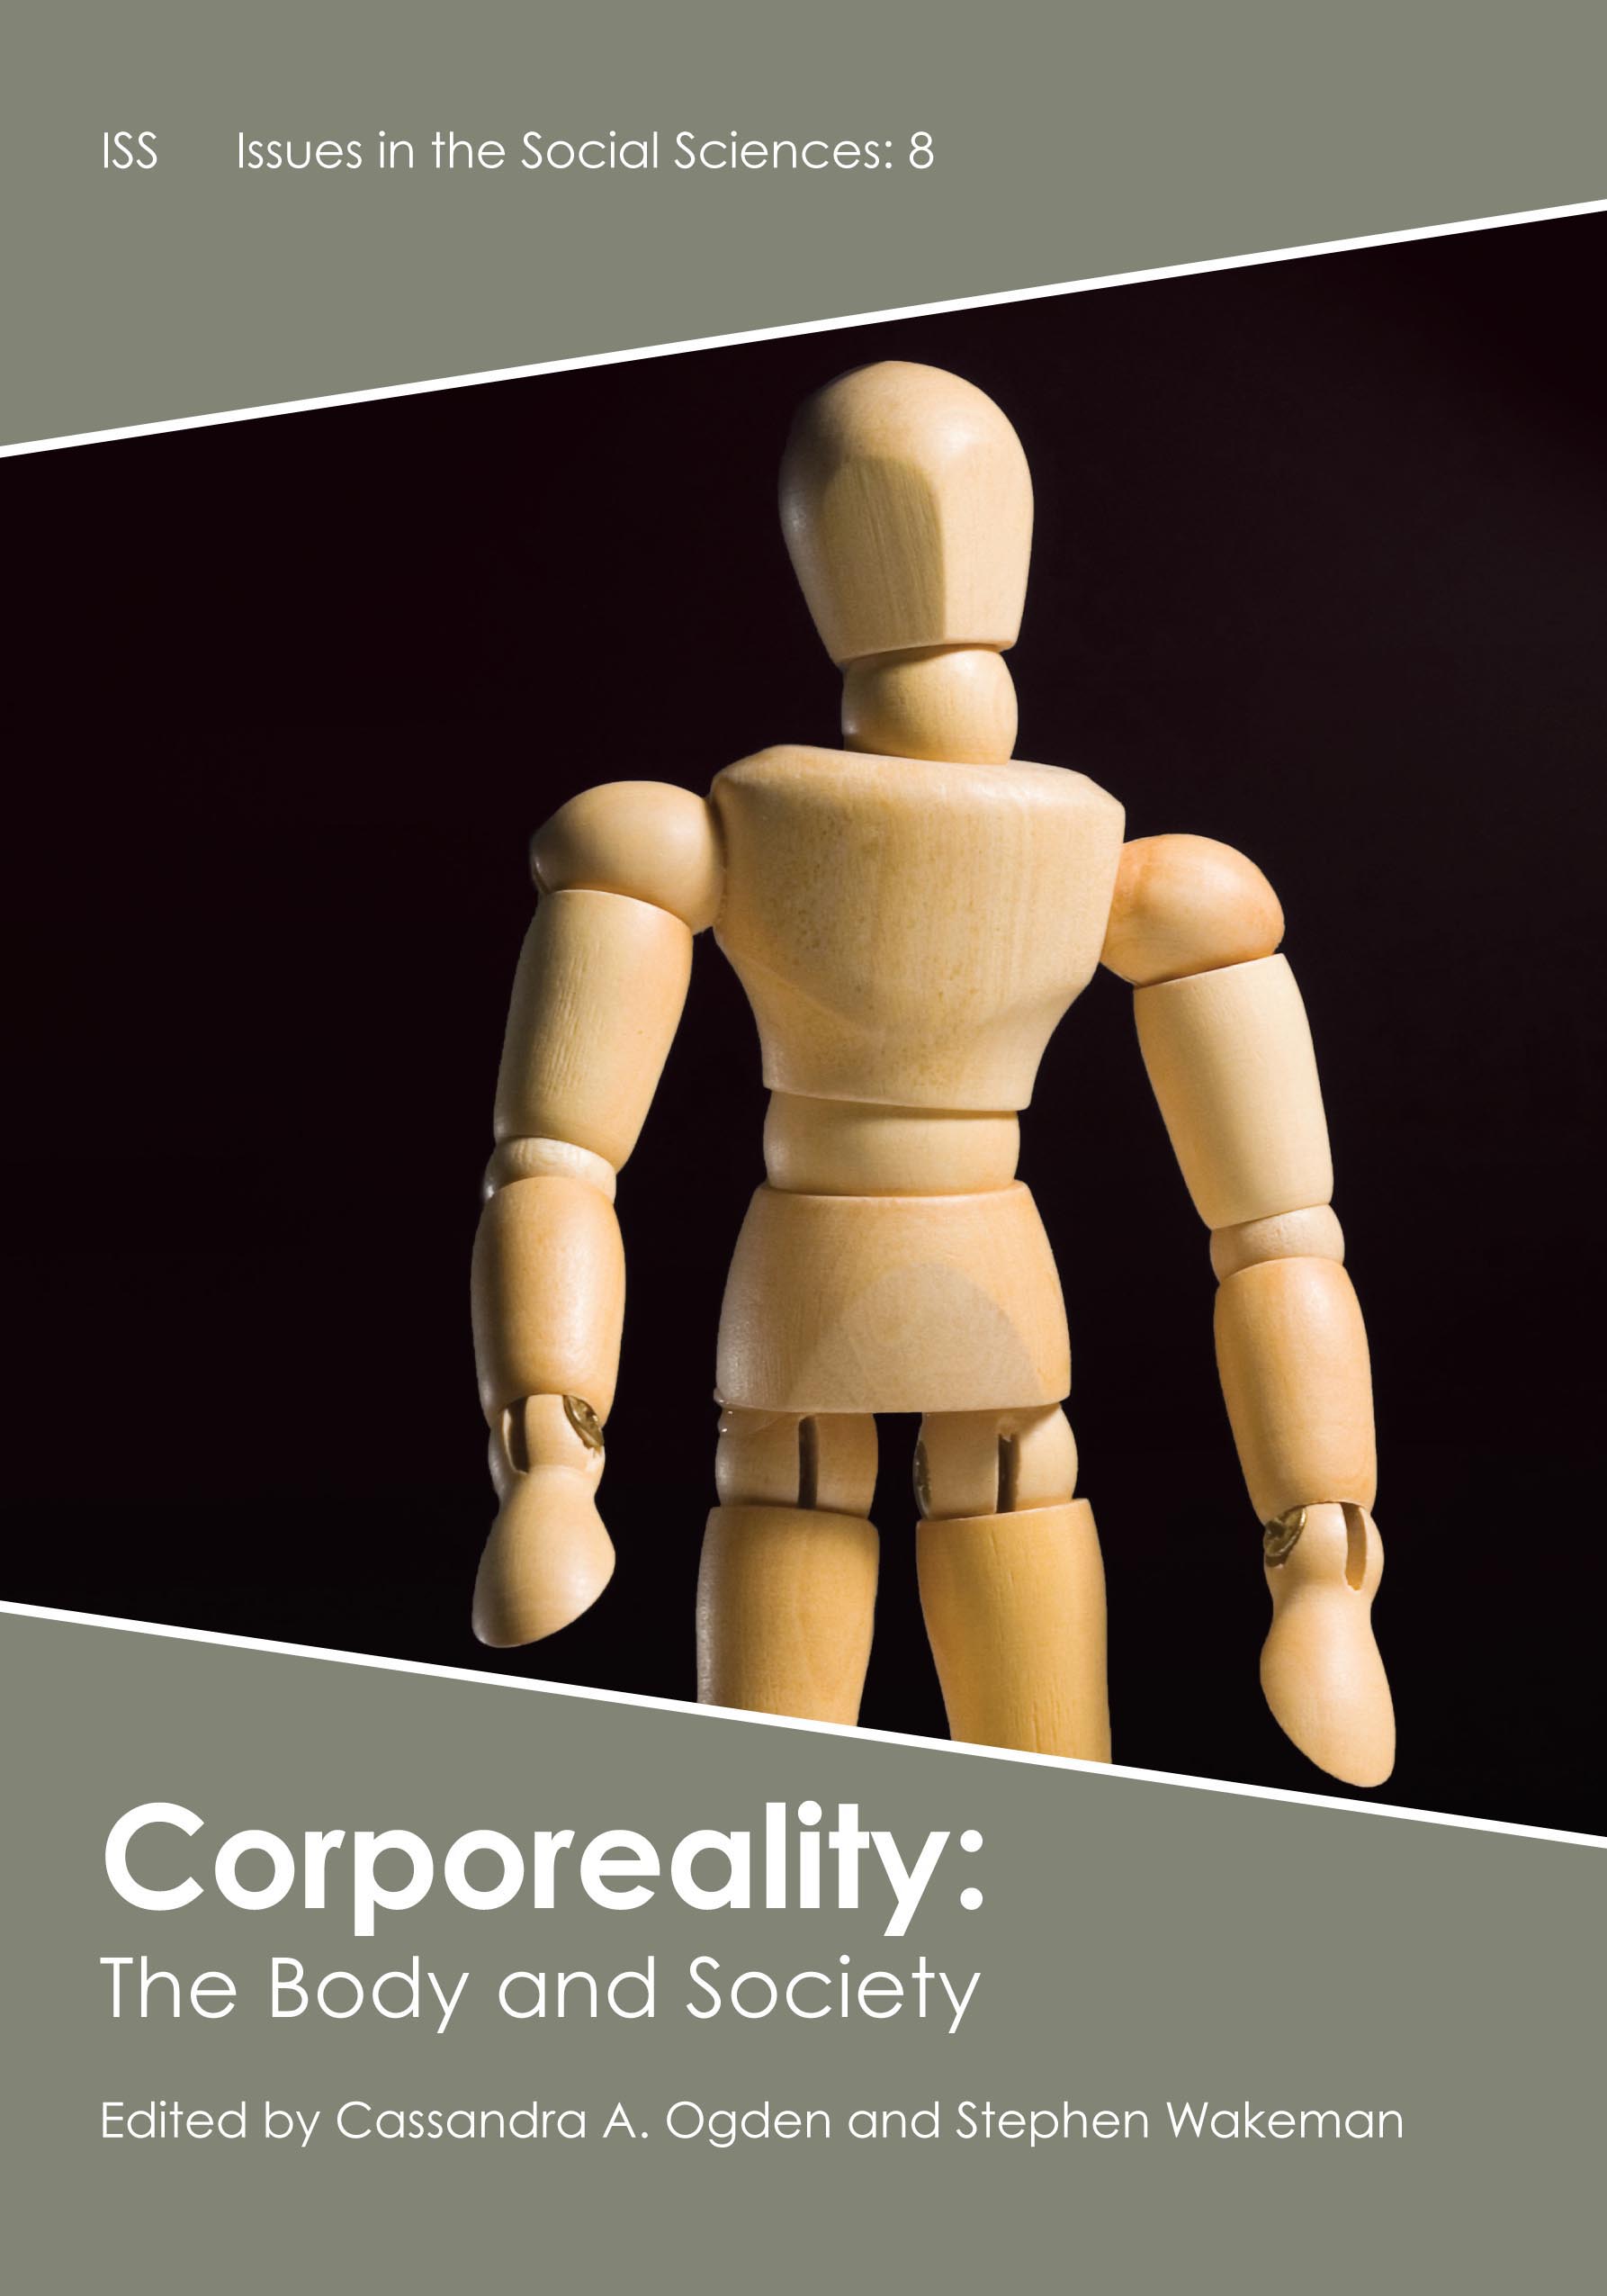 Corporeality: The Body and Society